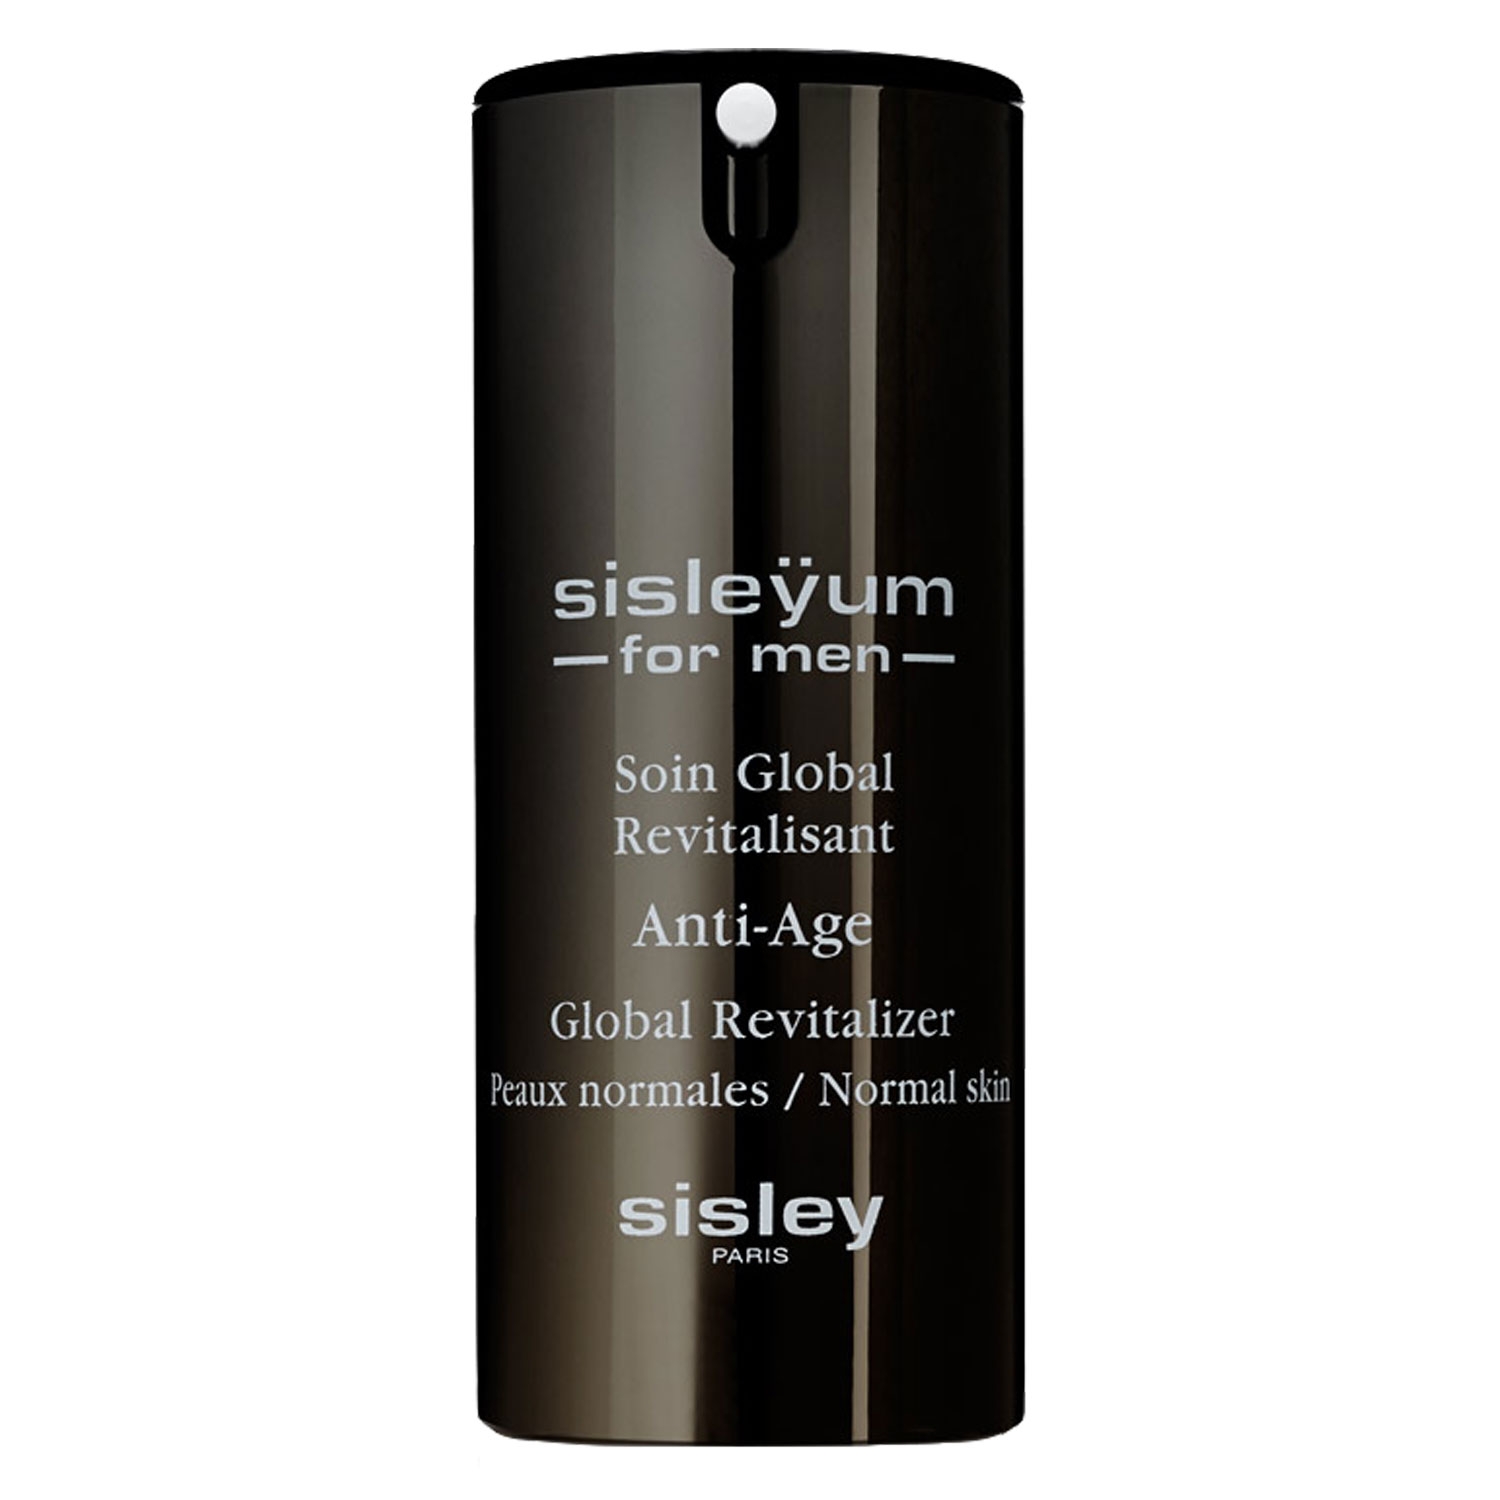 Produktbild von Sisleÿum - For Men Soin Global Revitalisant peaux normales